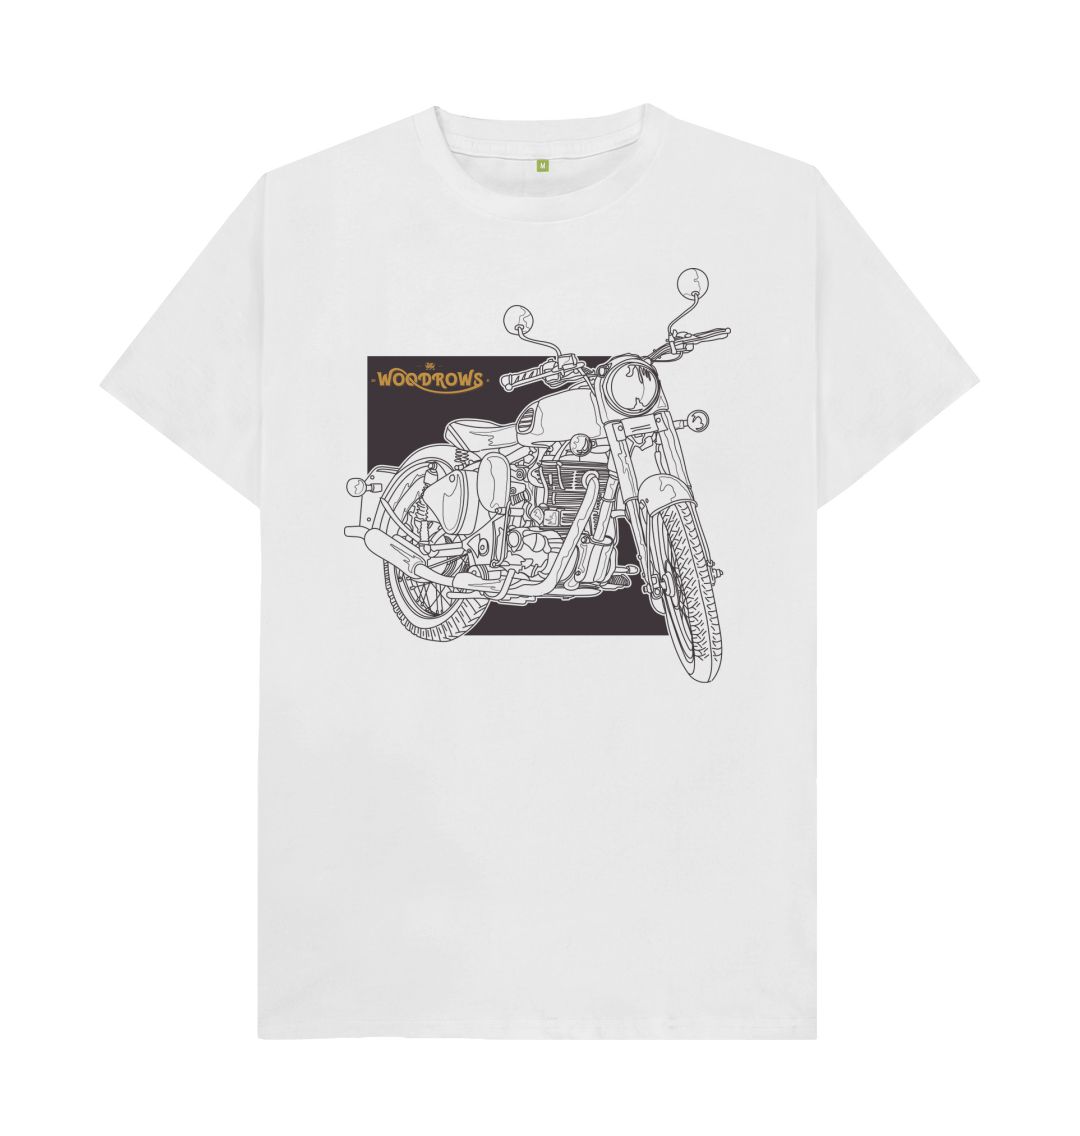 White Woodrow's Classic bike T-Shirt